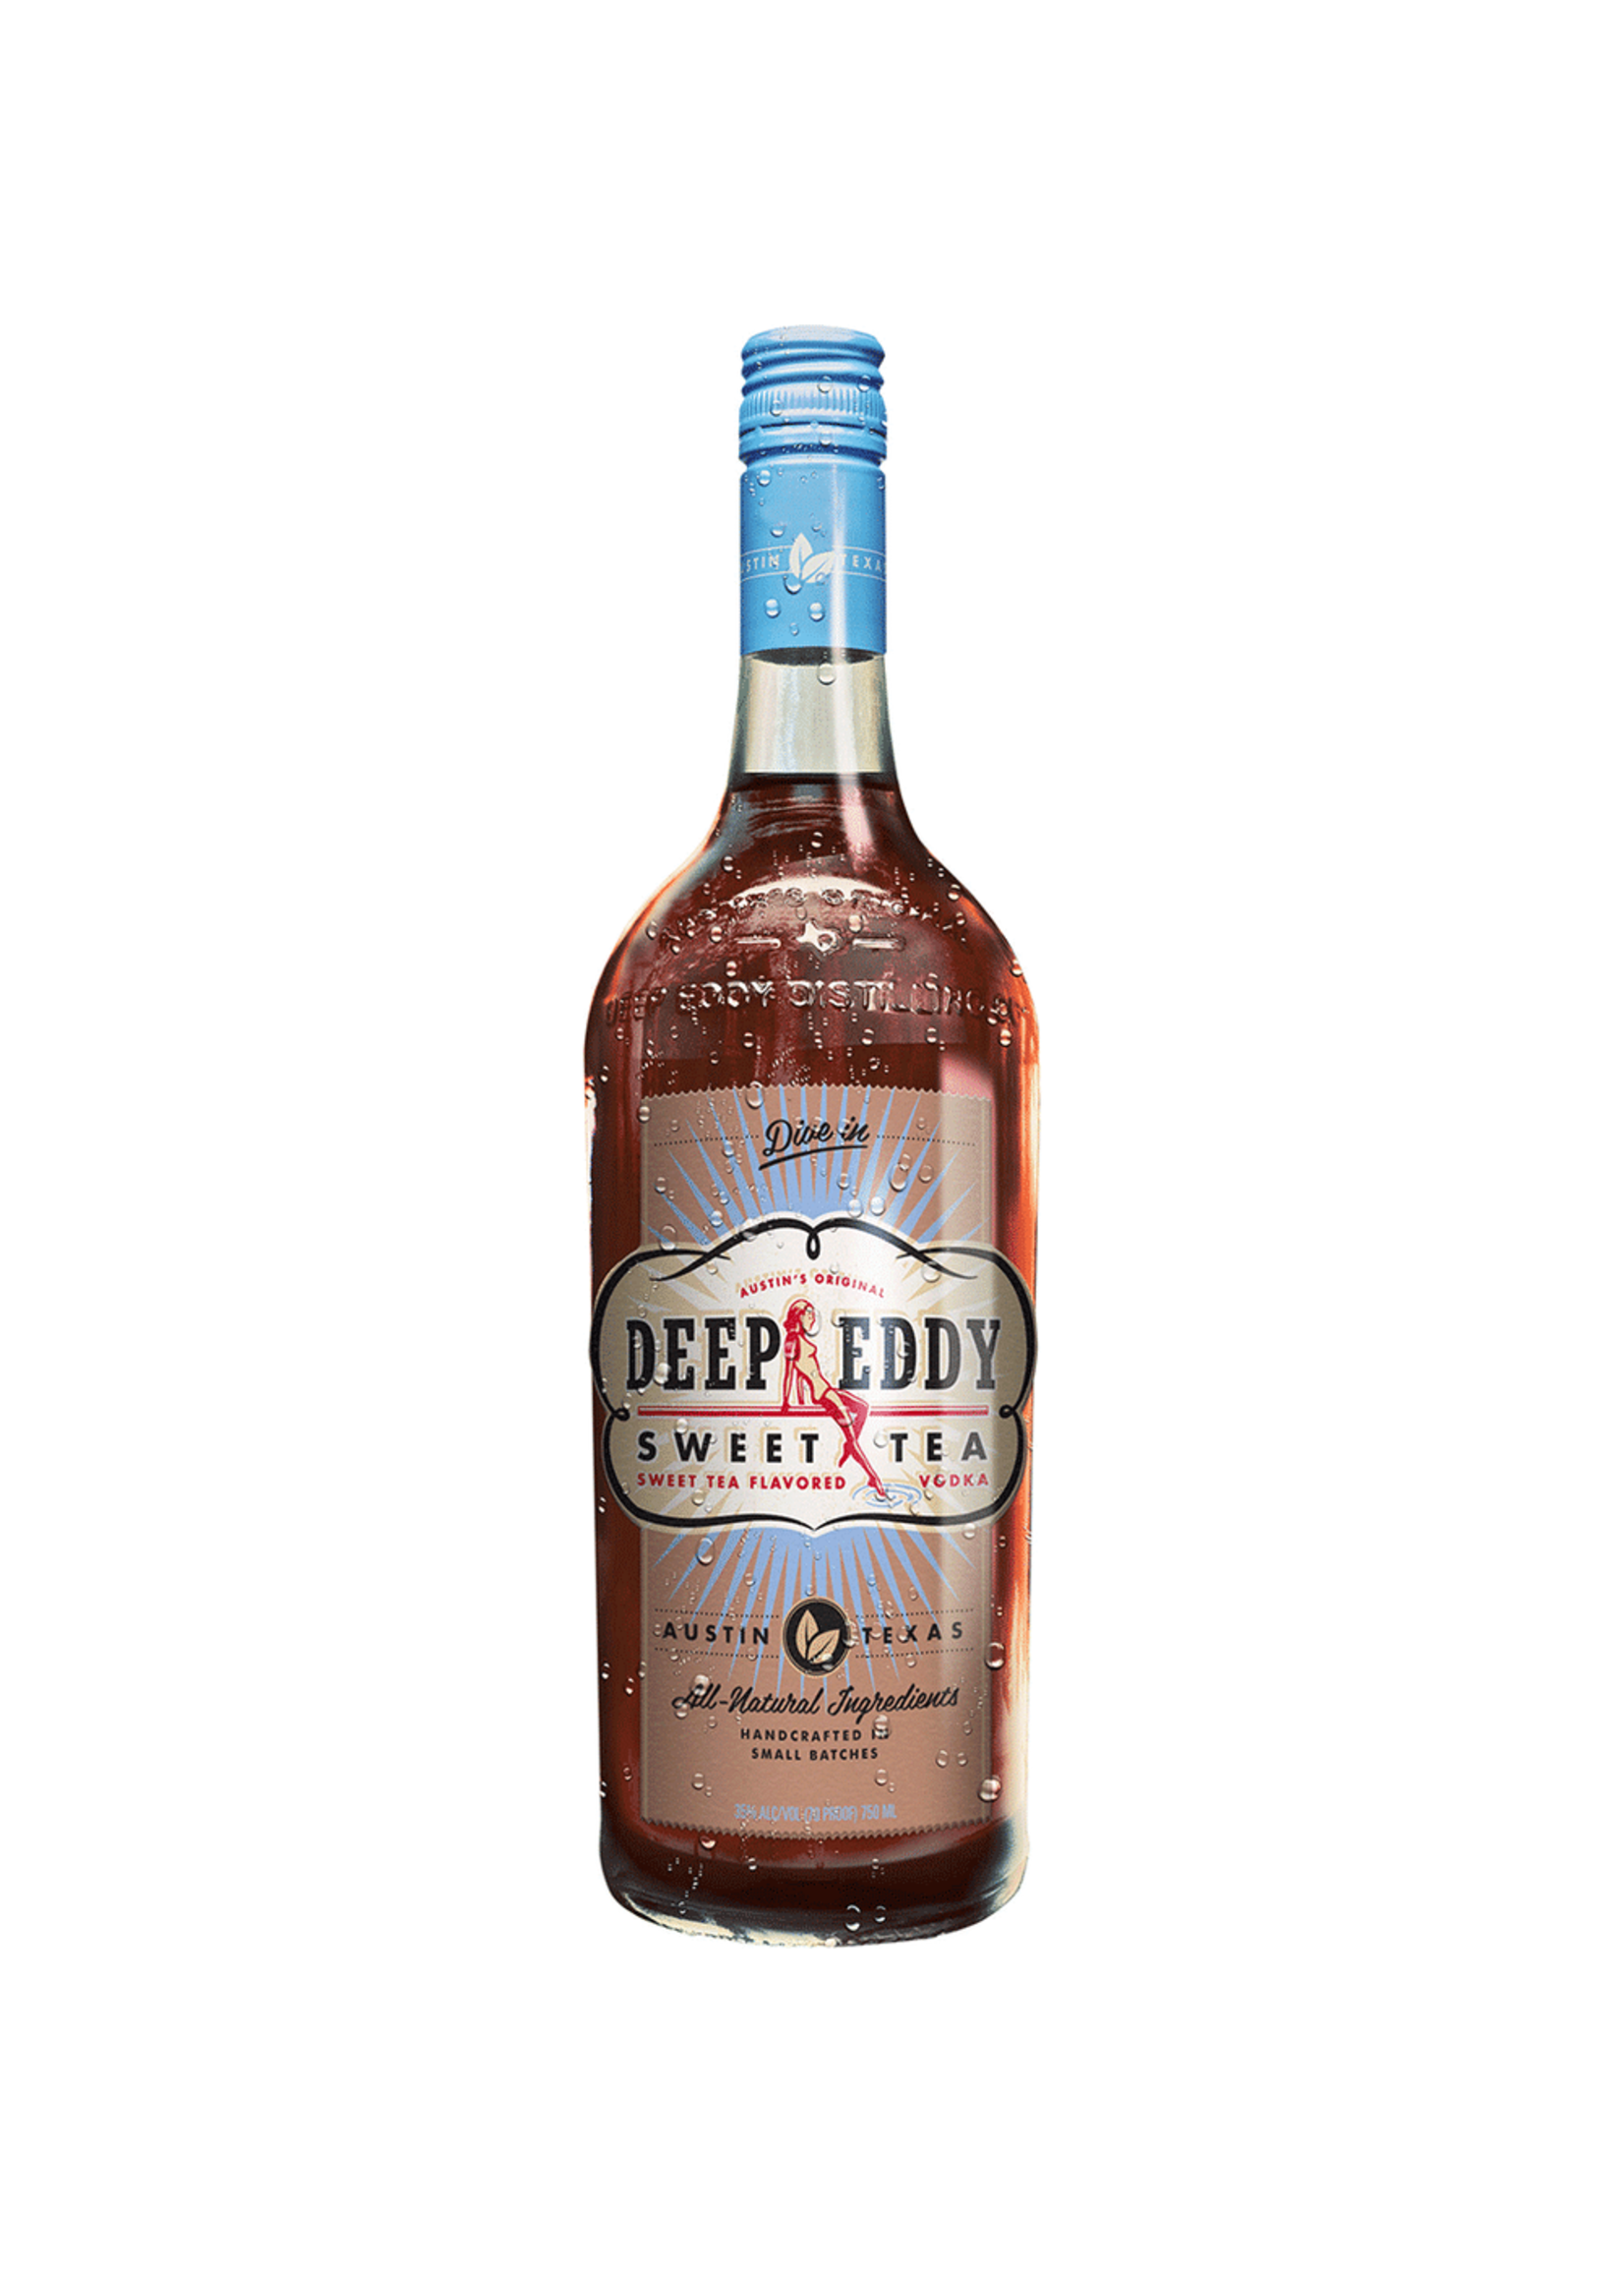 Deep Eddy Vodka Deep Eddy Texas Sweet Tea Flavored Vodka 70Proof 750ml